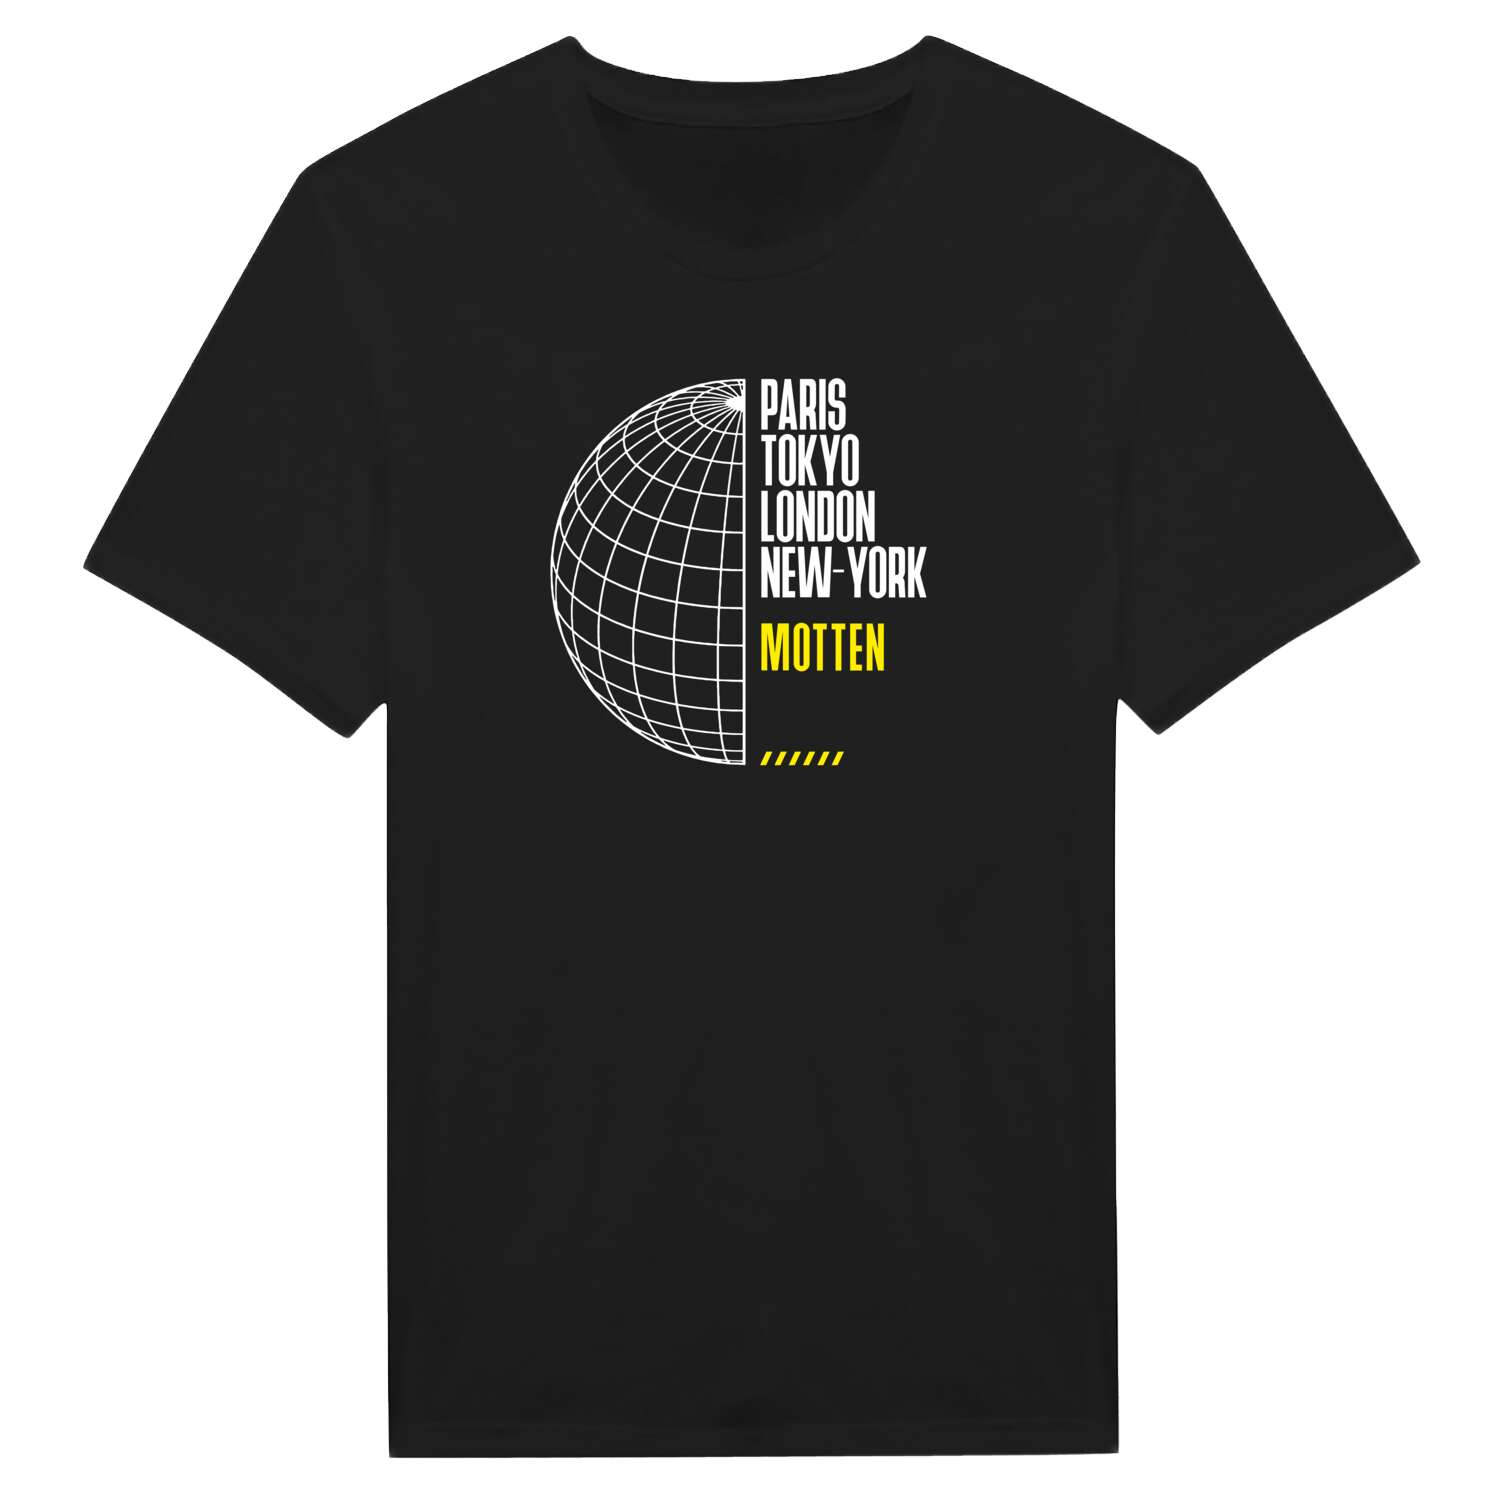 Motten T-Shirt »Paris Tokyo London«